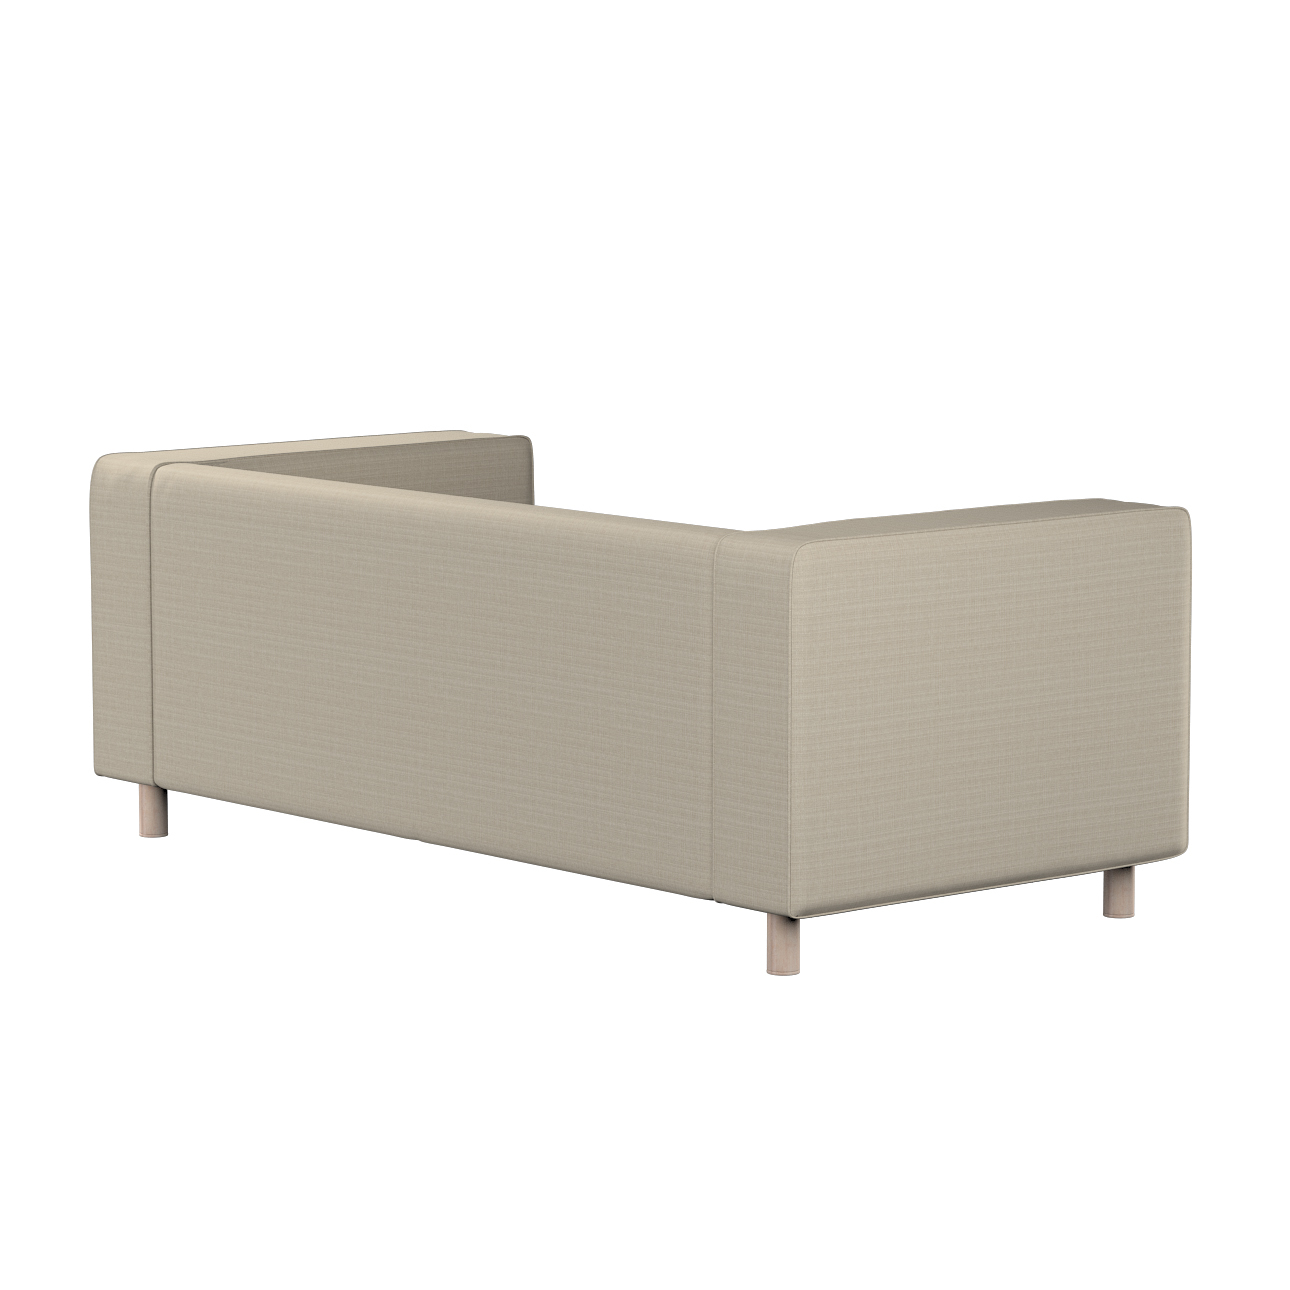 Bezug für Klippan 2-Sitzer Sofa, beige, Sofahusse, Klippan 2-Sitzer, Living günstig online kaufen